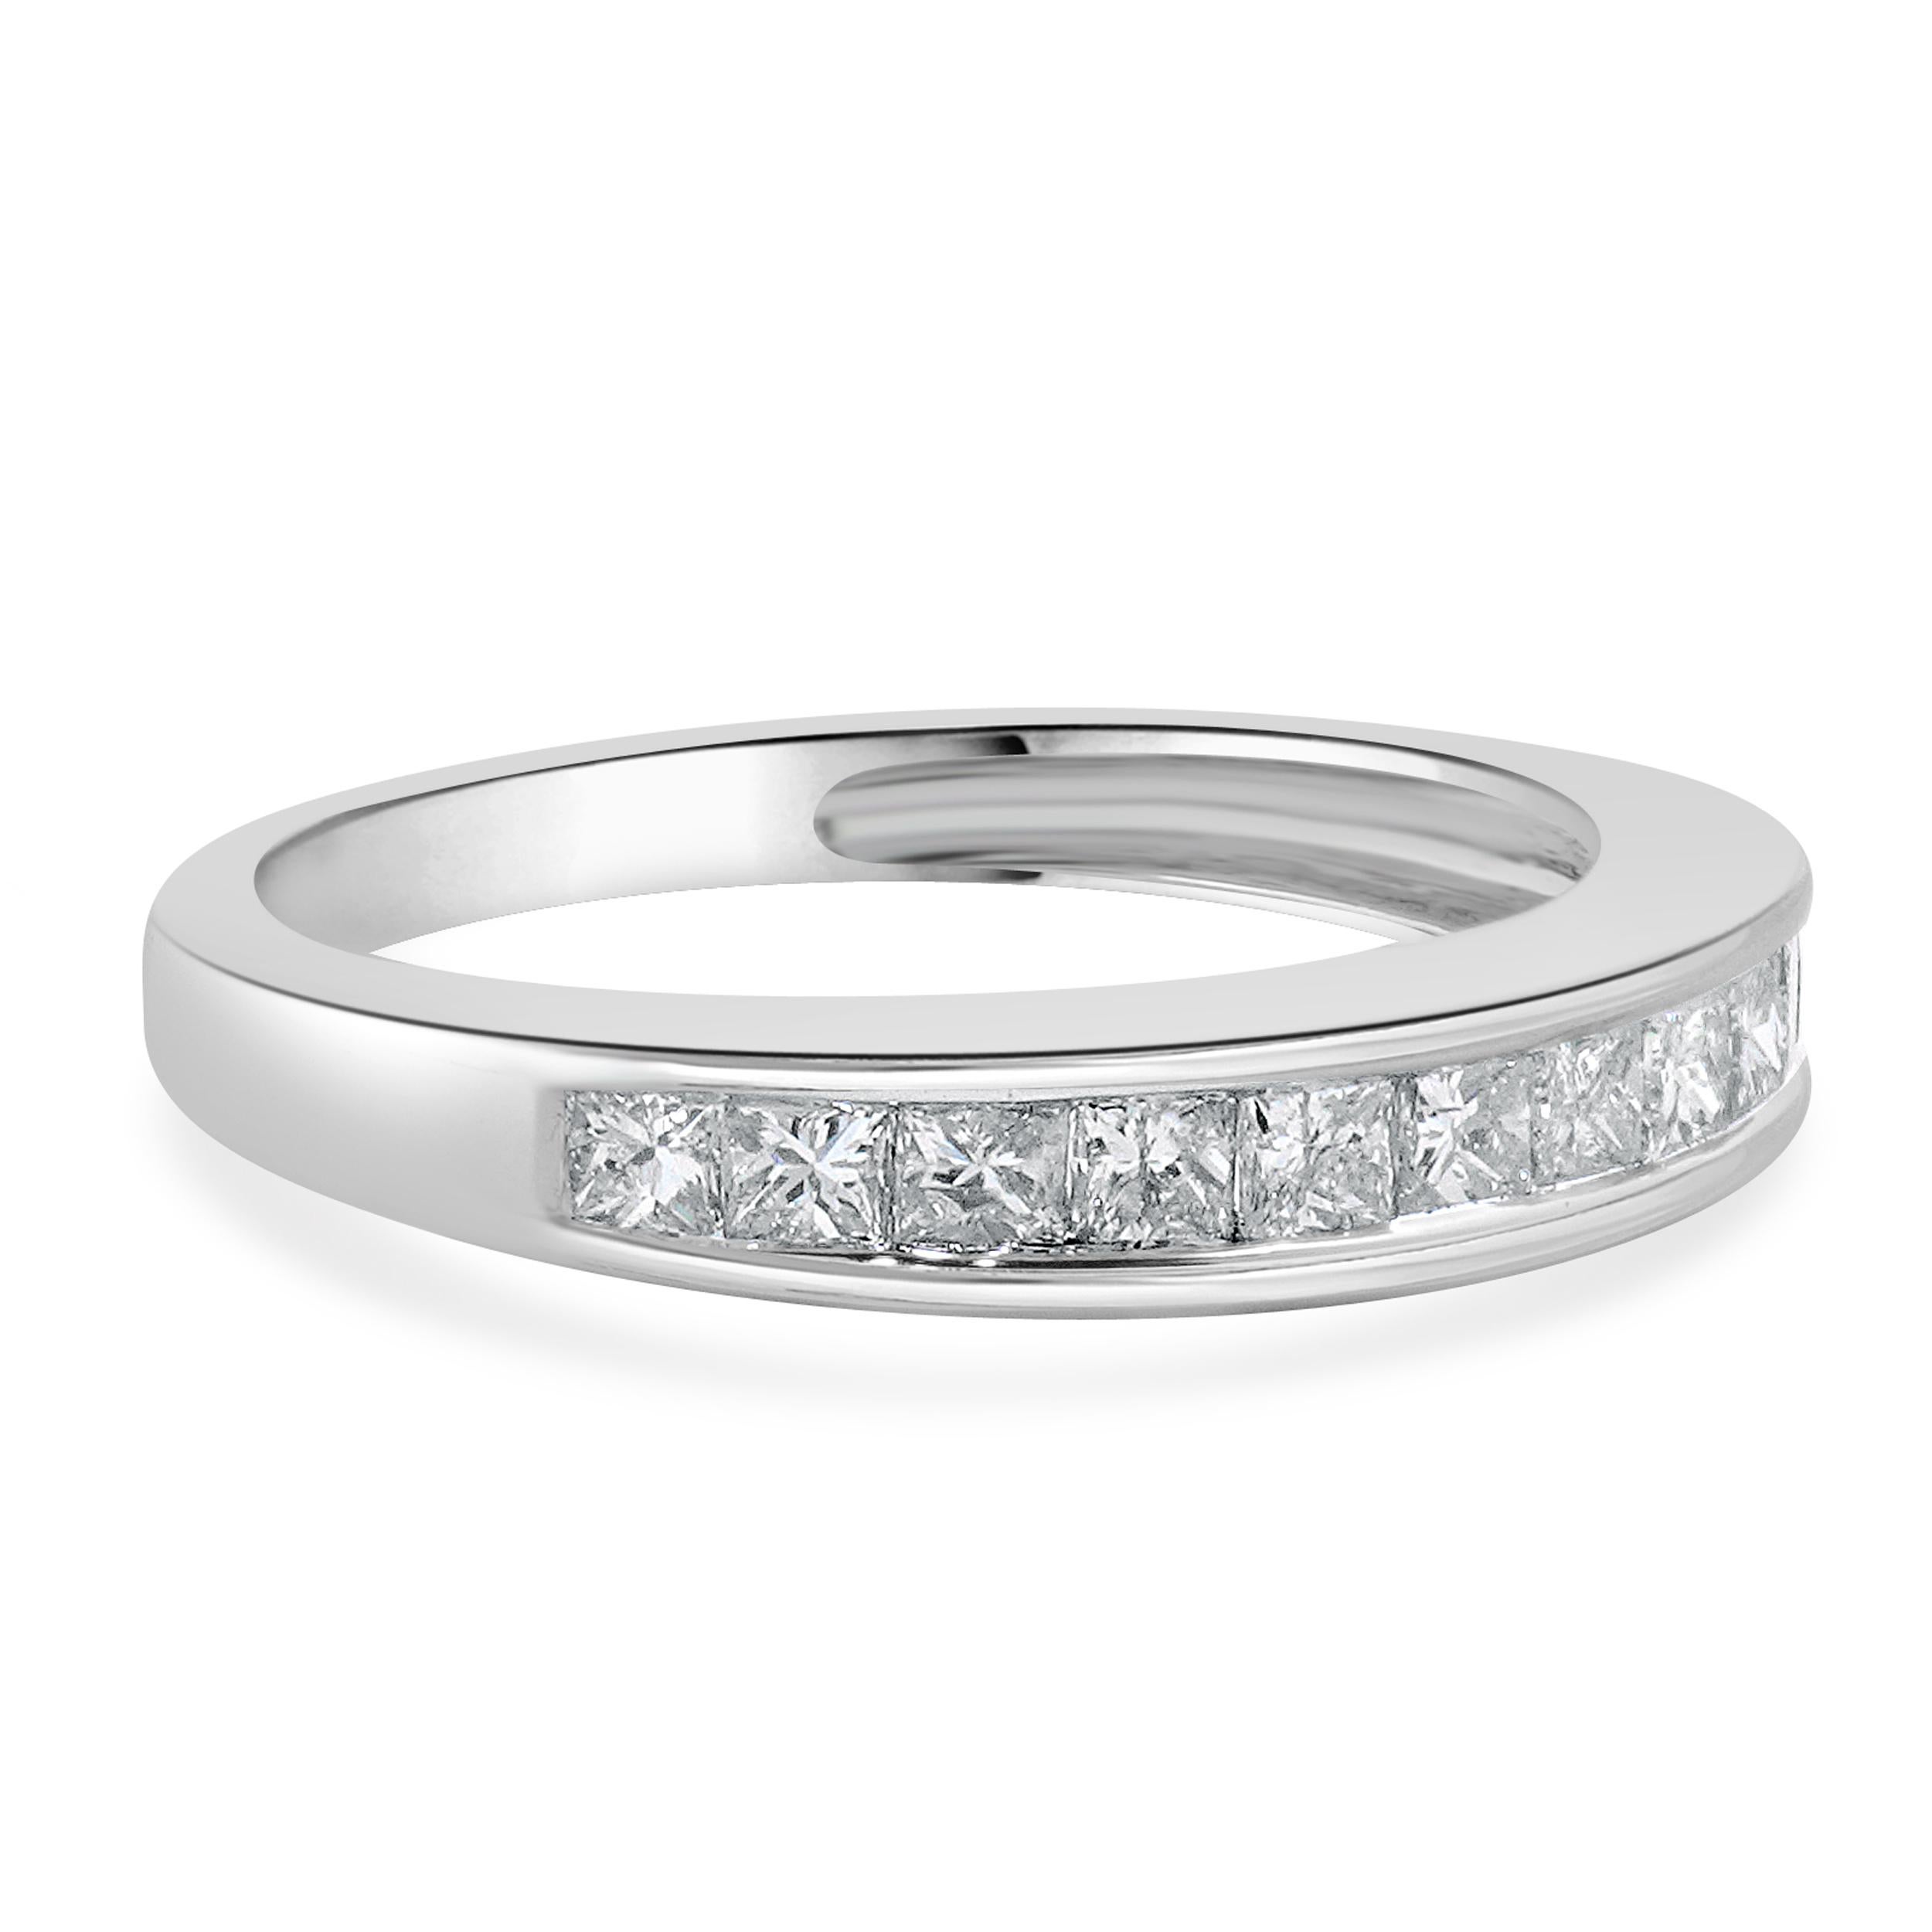 Concepteur : Custom
Matériau : Or blanc 14K
Diamants : 11 taille princesse = 0,88cttw
Couleur : I
Clarté : I1
Taille : 5.5 tailles disponibles 
Dimensions : le sommet de l'anneau mesure 3.6 mm de large.
Poids : 2.65 grammes
